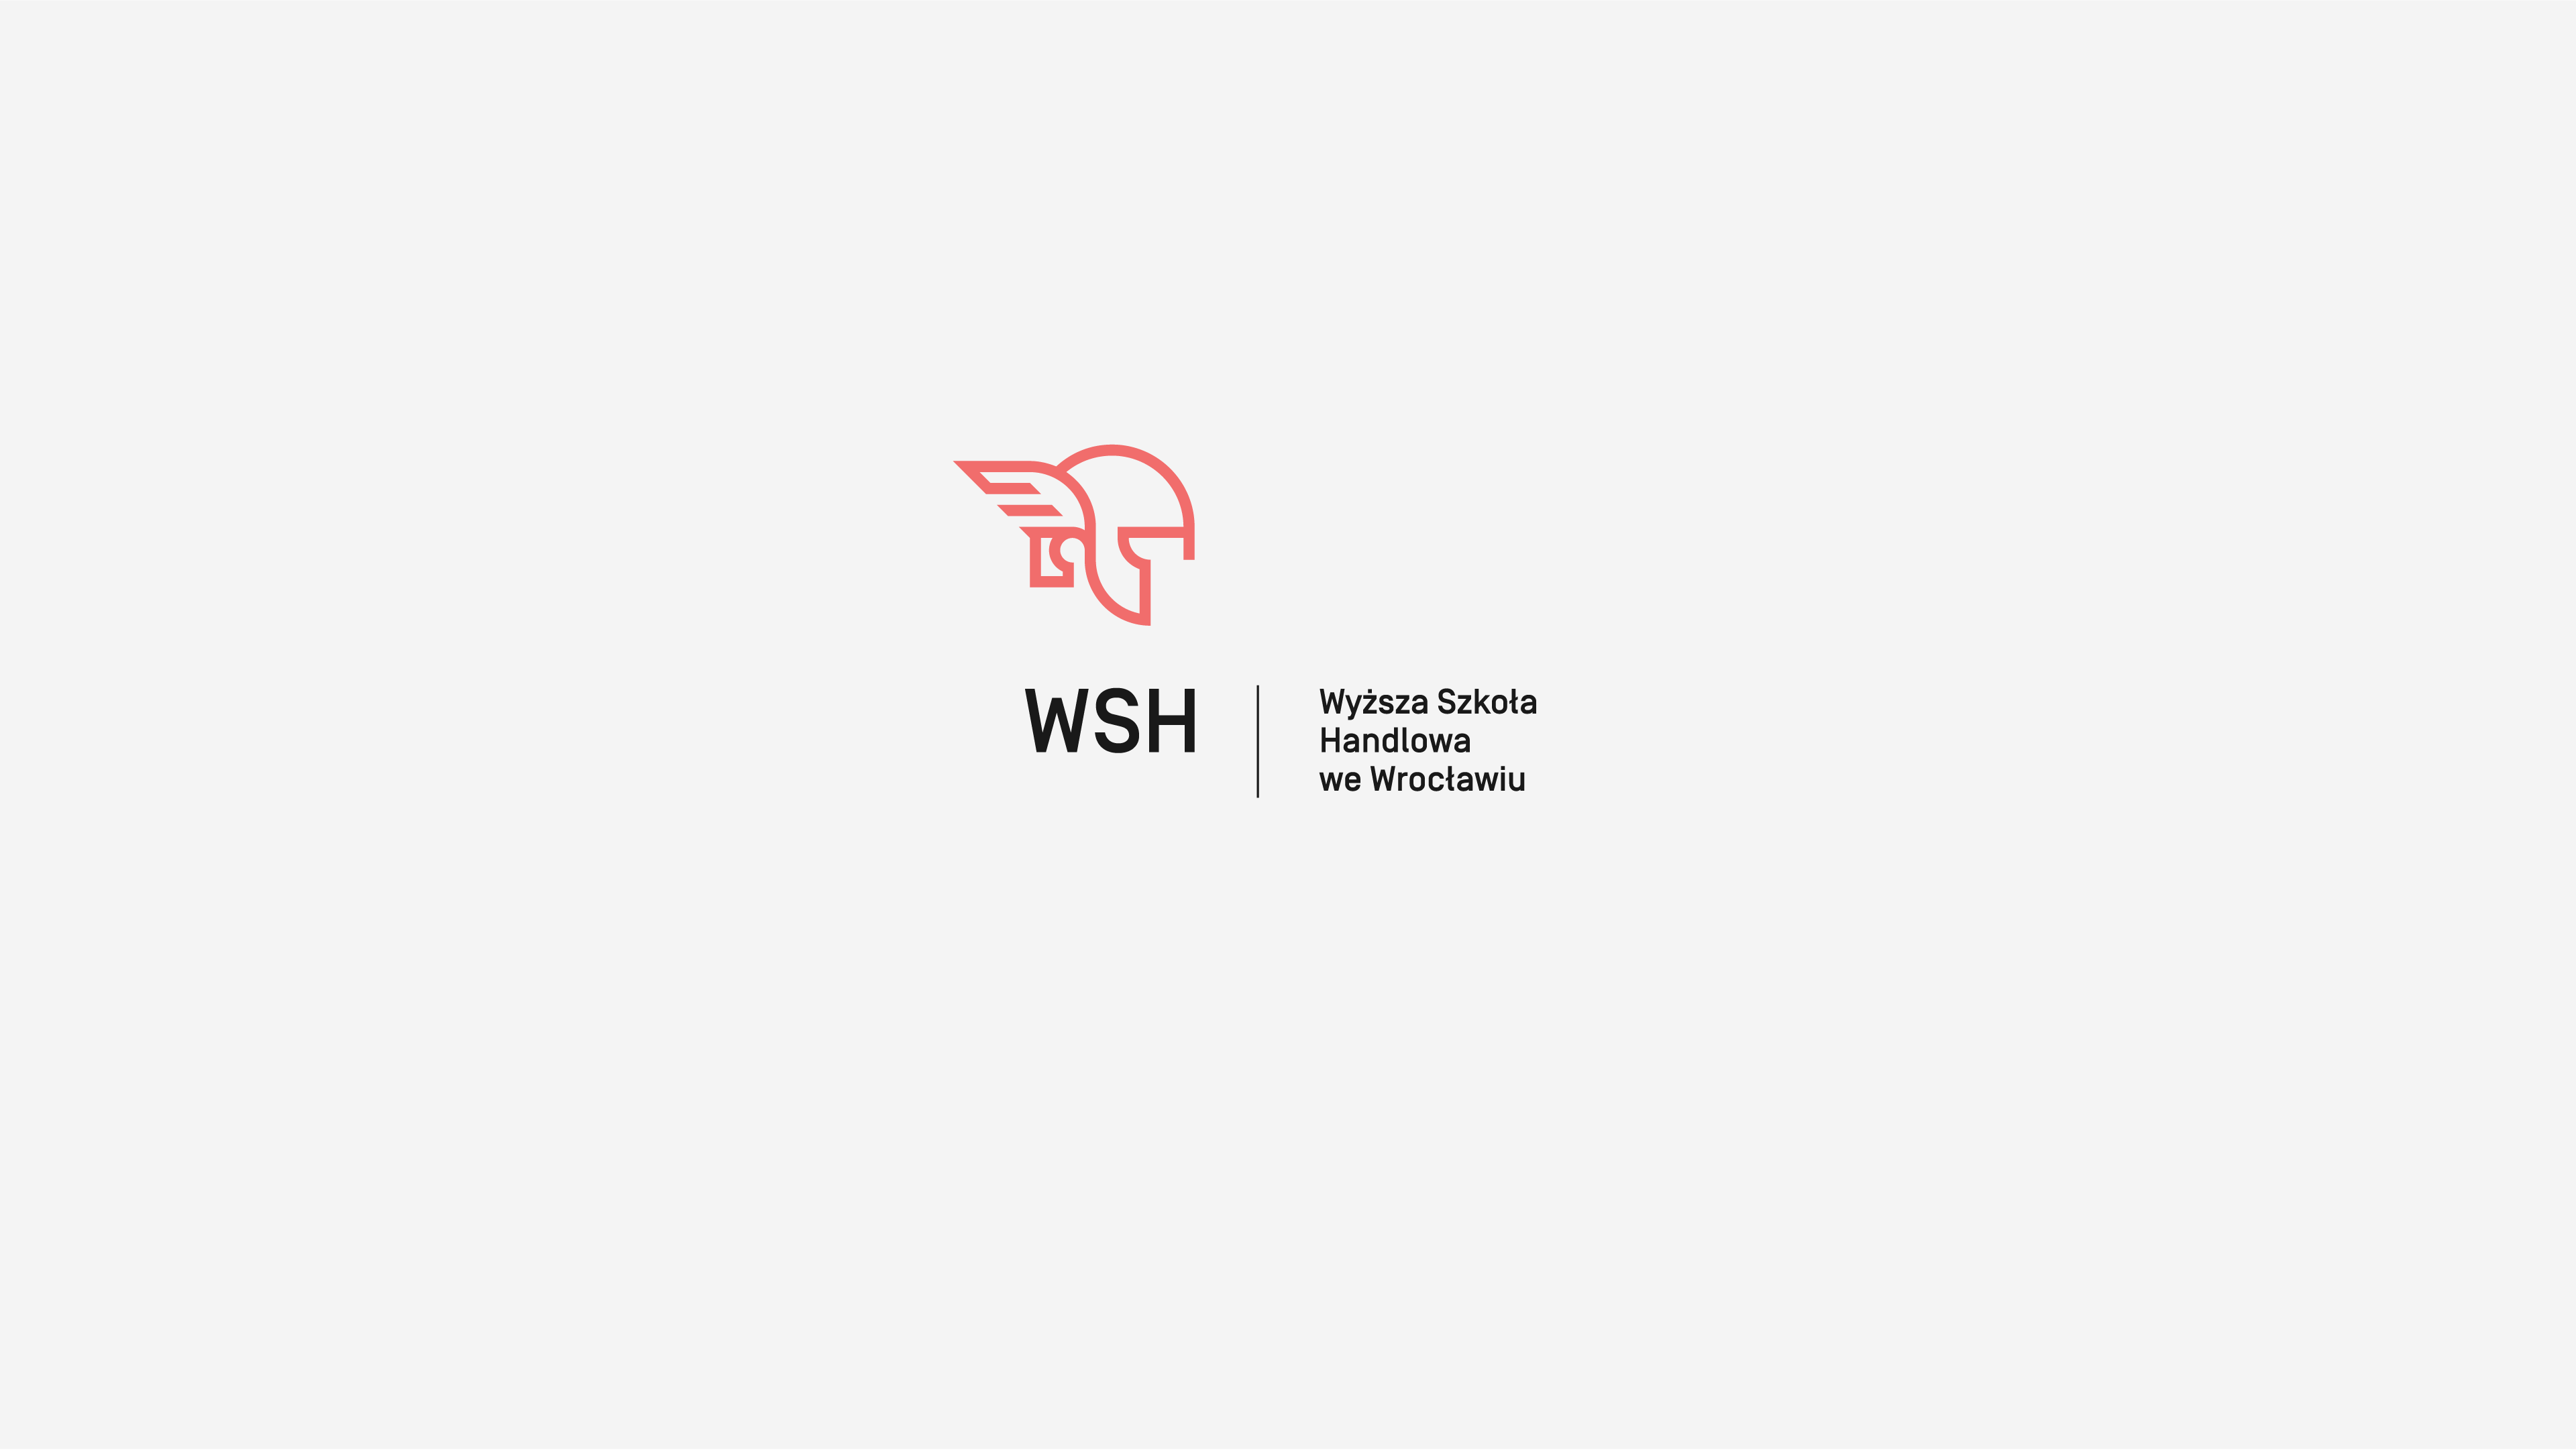 WSH - The Codeine Design